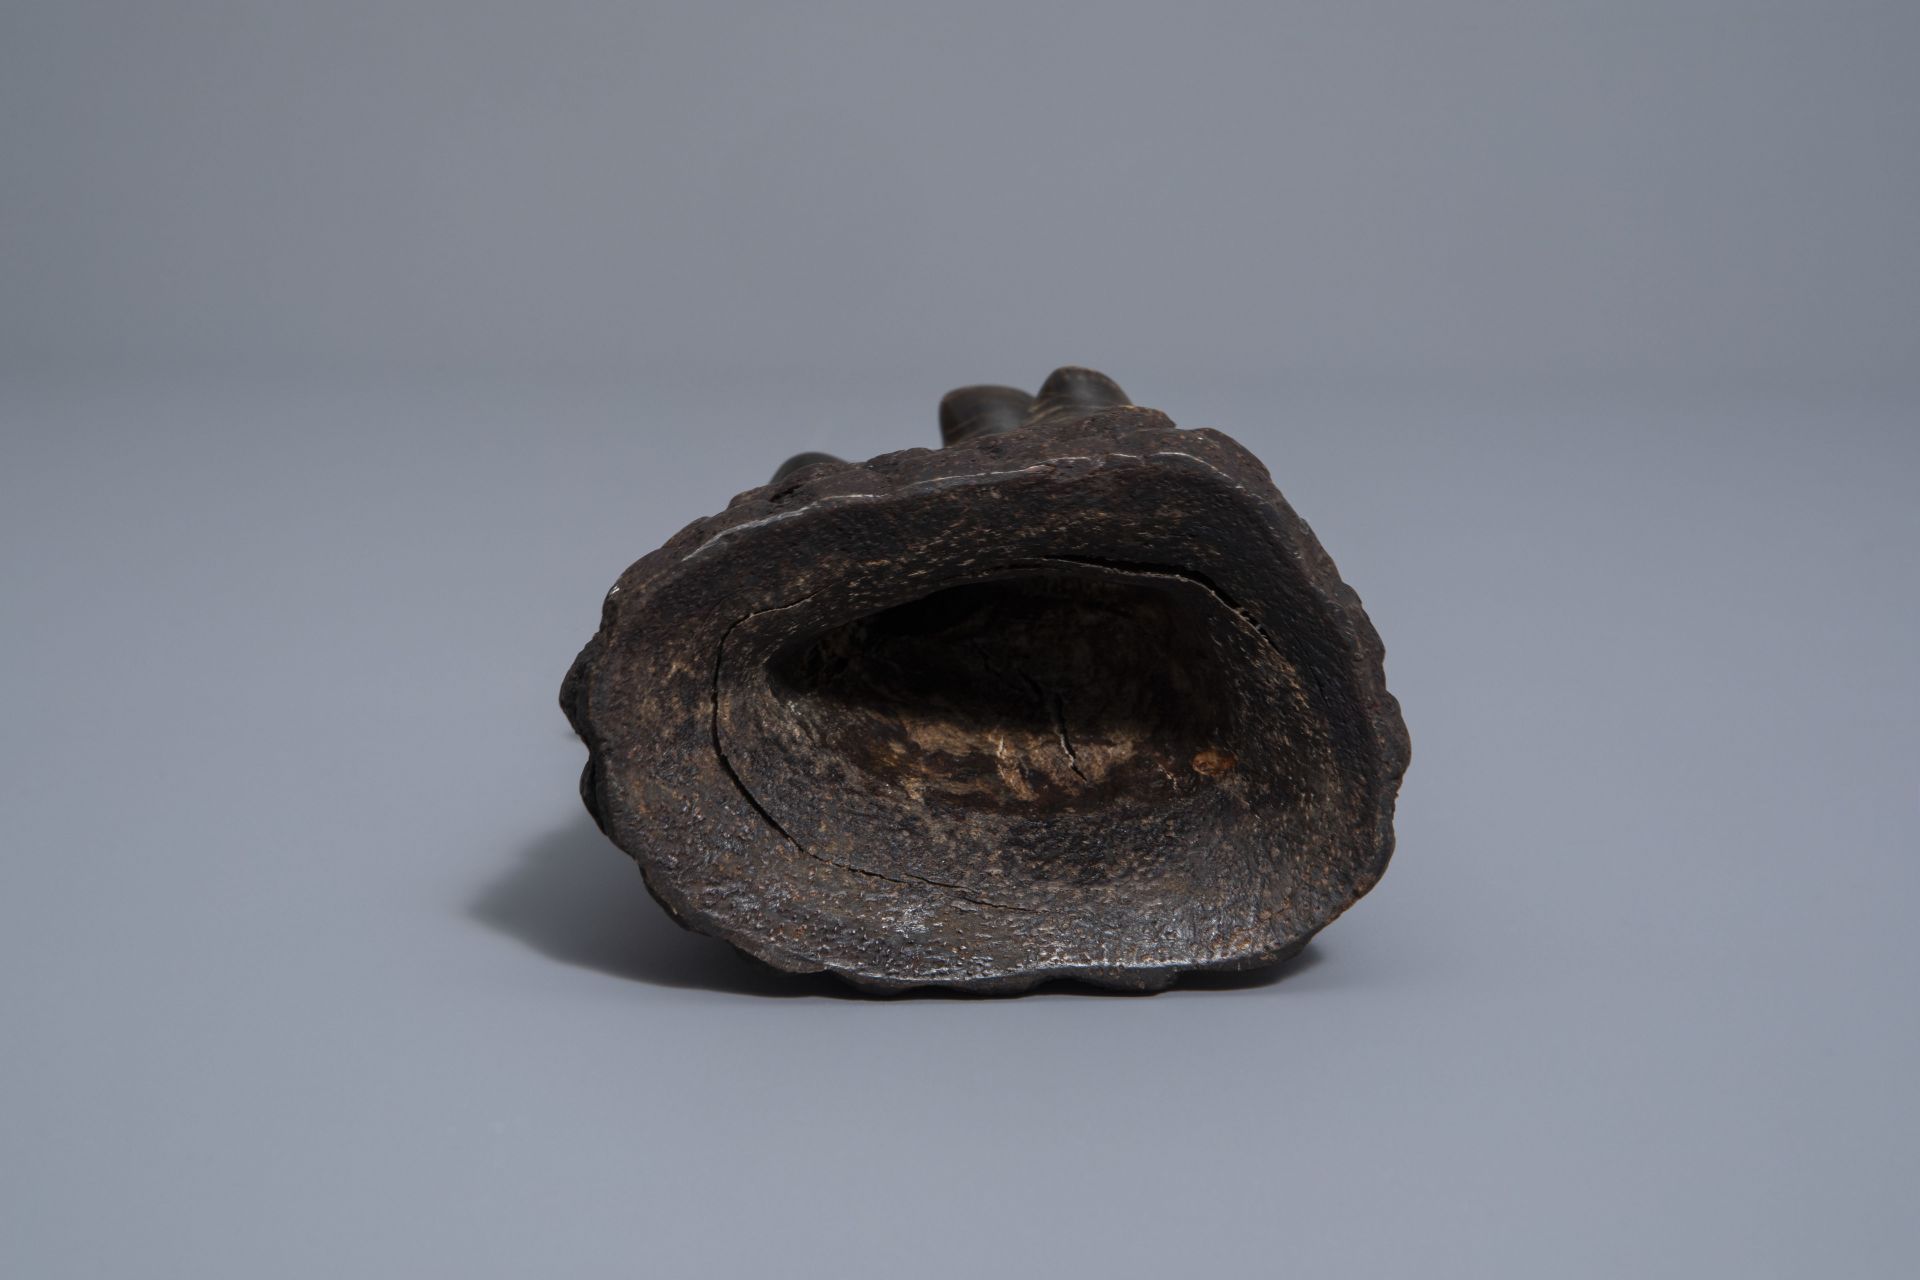 A Sng t giac or scholar's object in polished rhinoceros horn, Vietnam, 19th/20th C. - Image 6 of 7